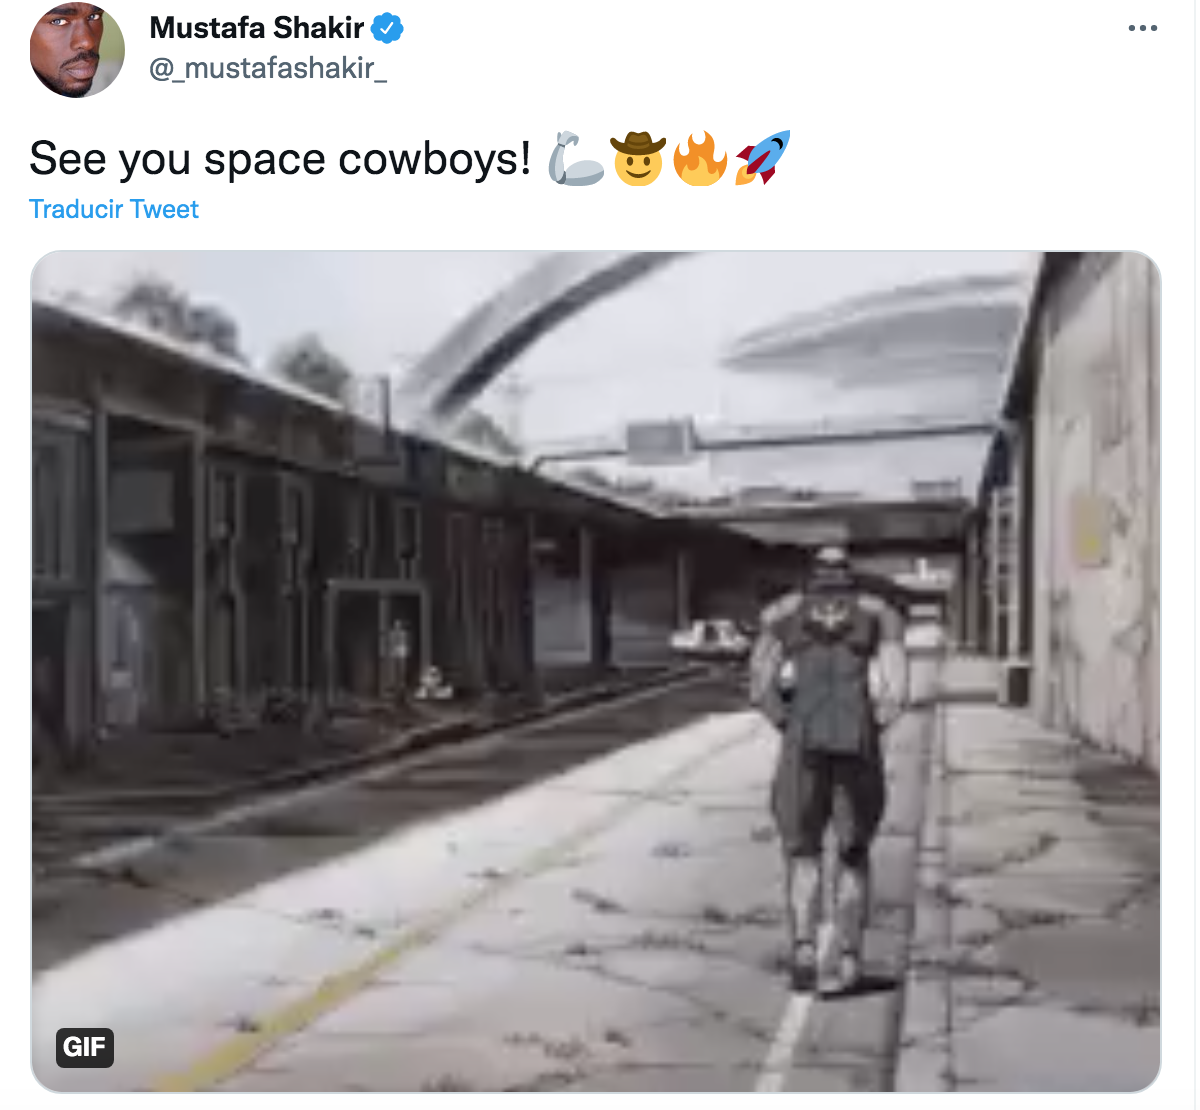 ¡Tsss! Cancelaron el live-action de 'Cowboy Bebop' y así reaccionó el internet (y el elenco)